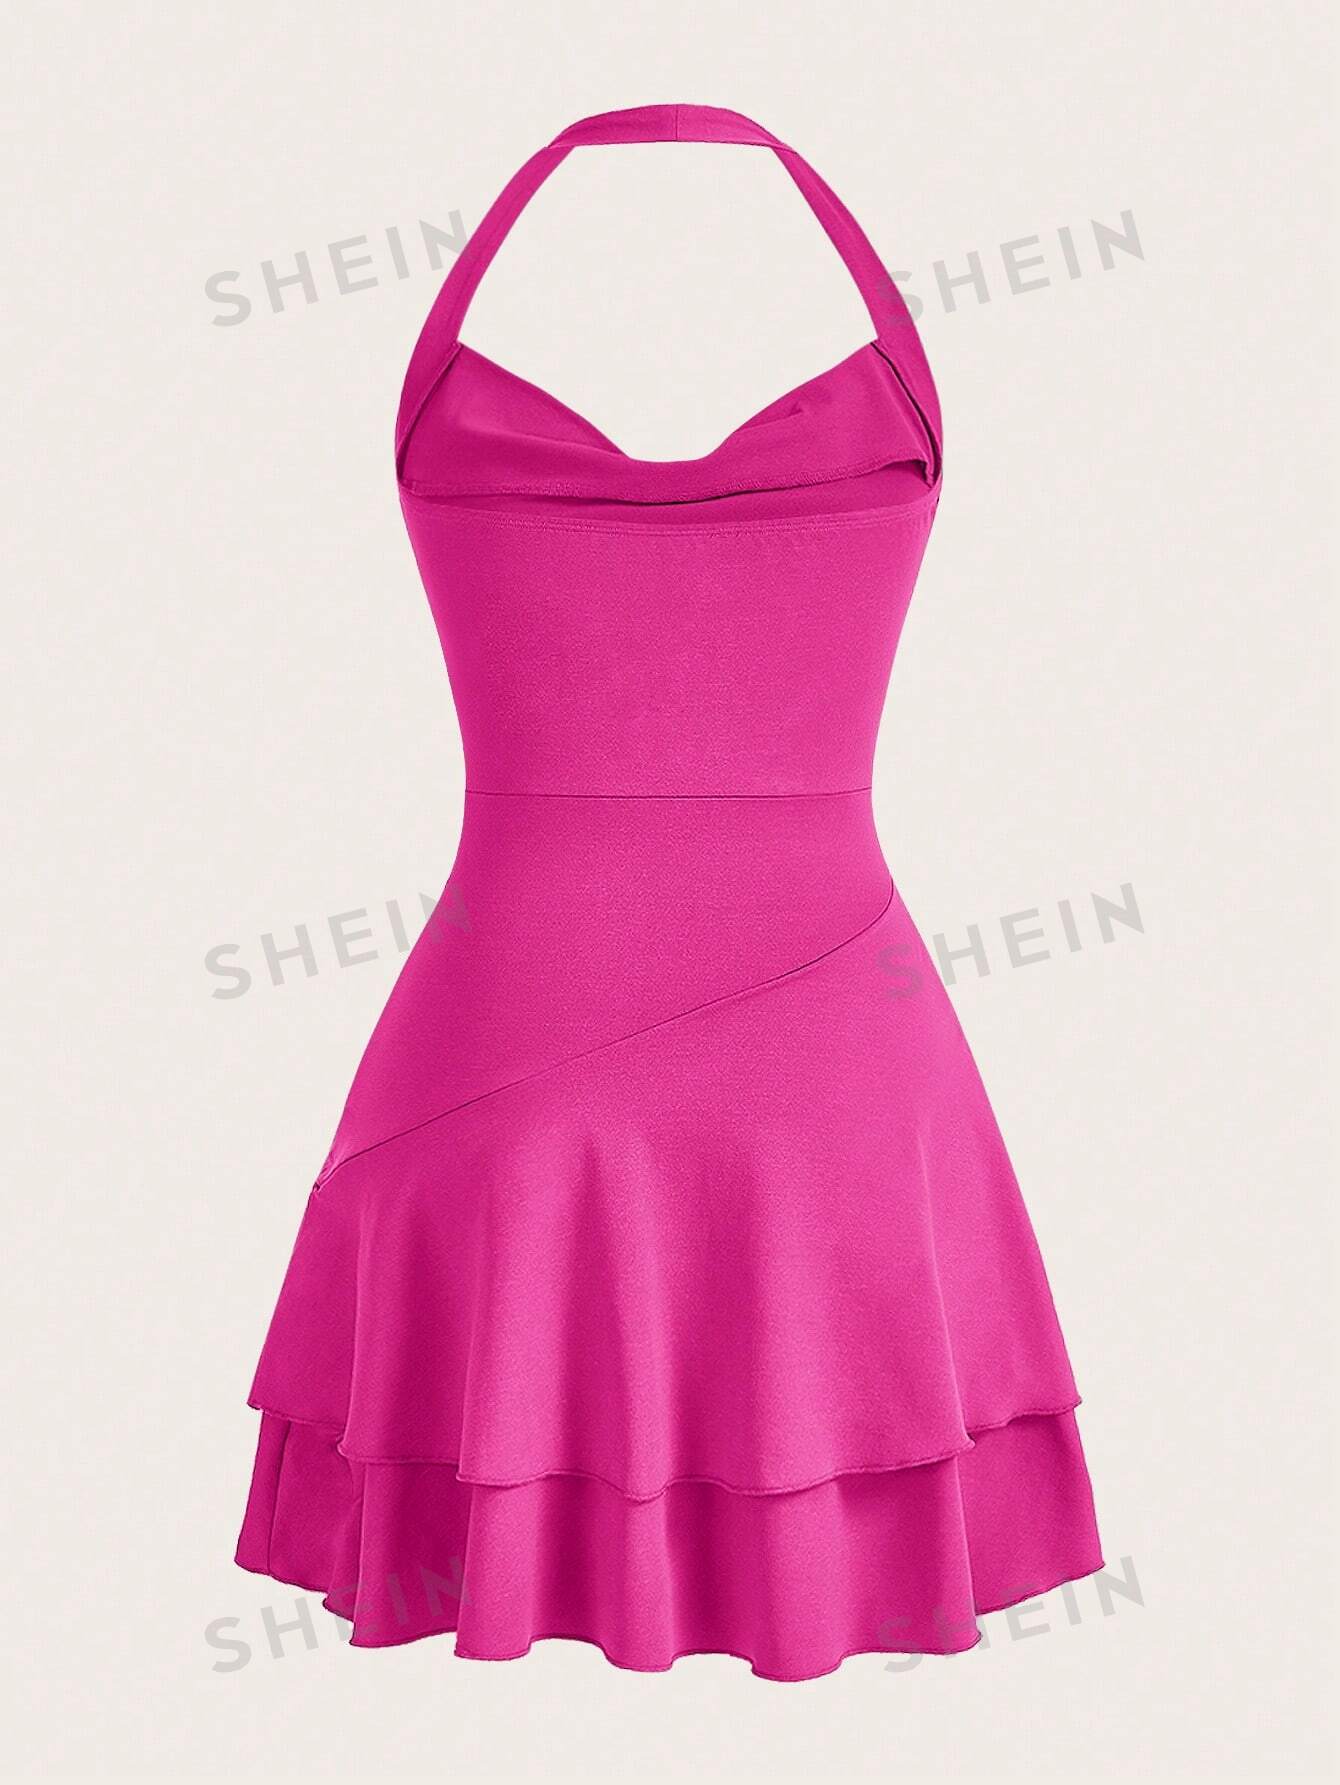 shein mod однотонное платье с гофрированной спиной и расклешенным подолом синий SHEIN MOD однотонное женское платье с бретелькой на шее и многослойным подолом, ярко-розовый